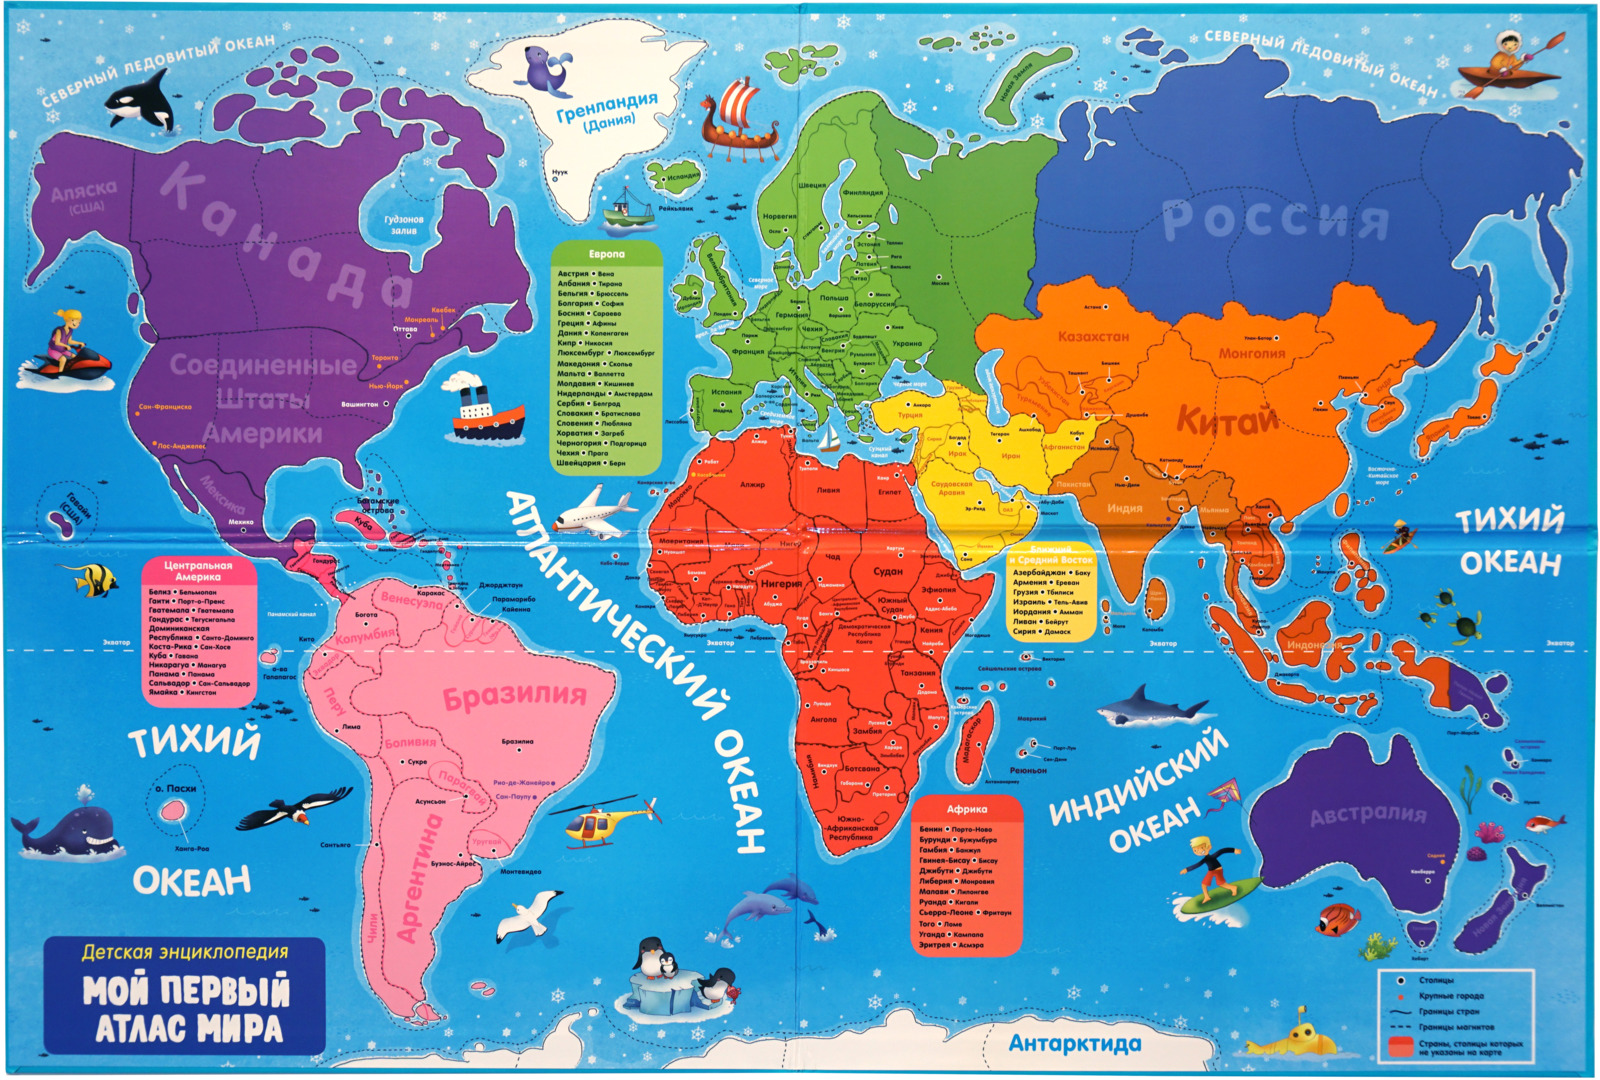 Карта мира с городами на русском крупно в хорошем качестве